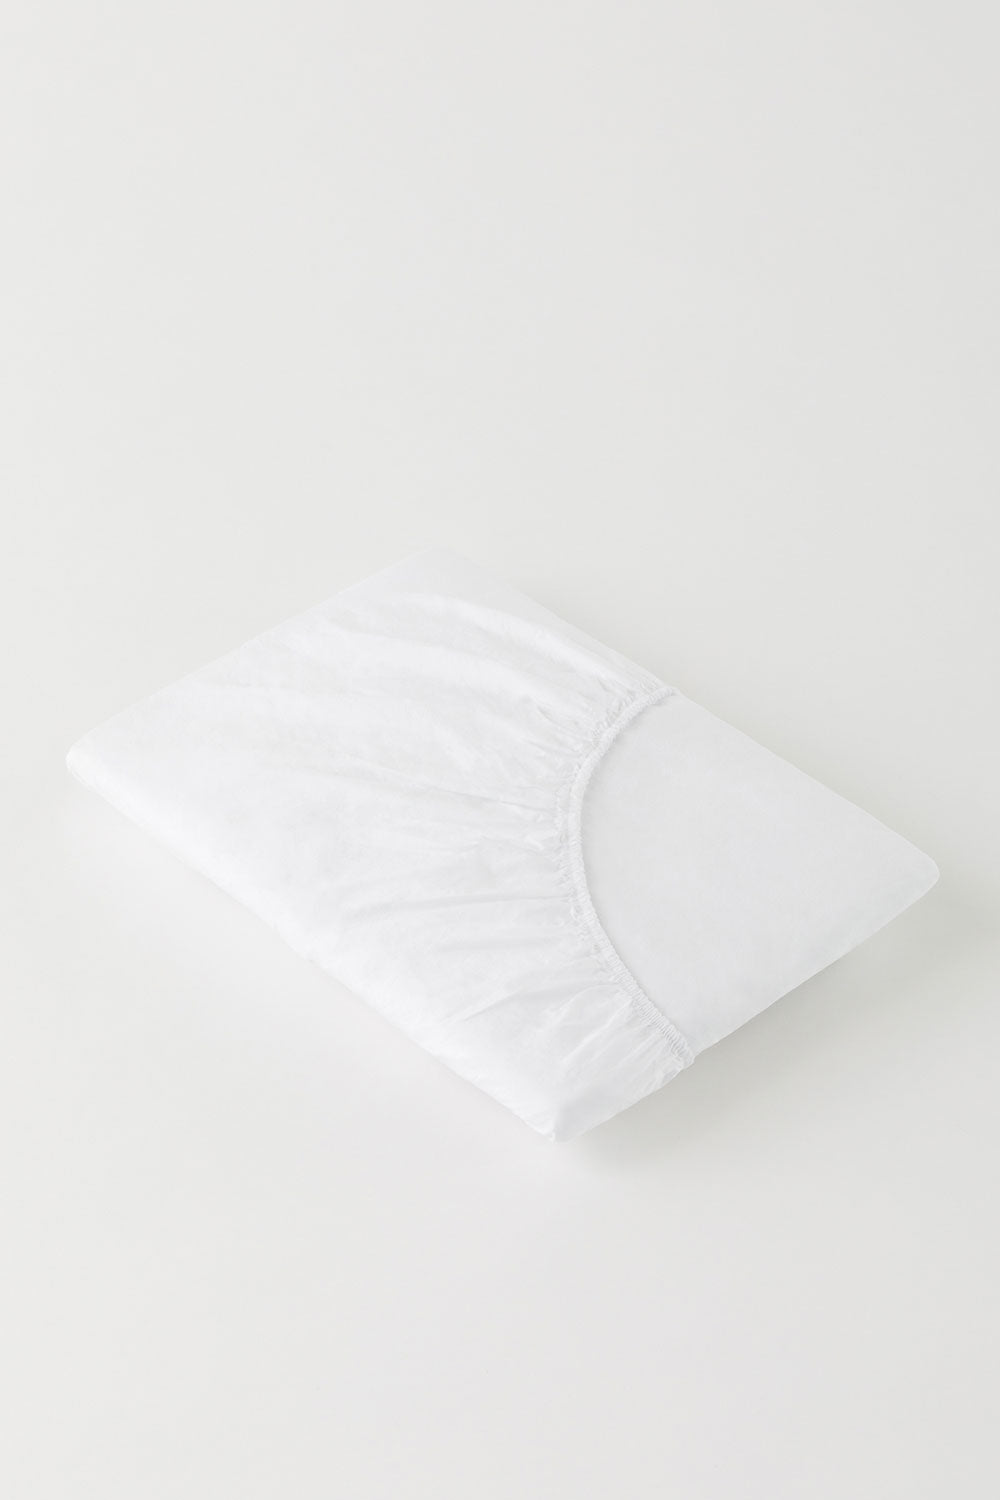 Faconlagen (160*200*35 cm), Bright White